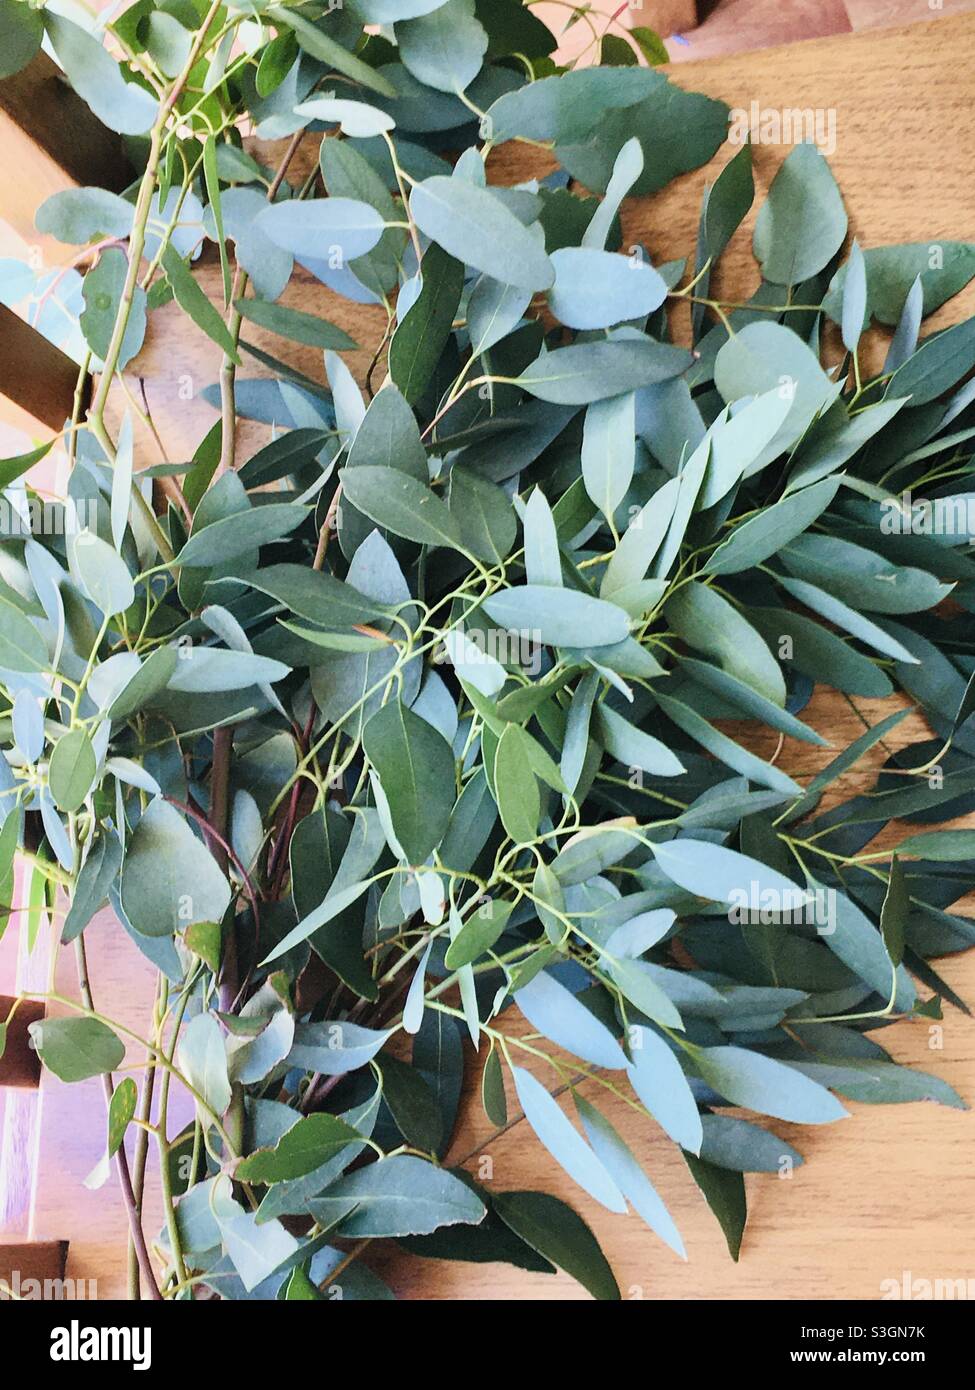 Eukalyptusblätter trocknen auf einem Holztisch im Sonnenlicht  Stockfotografie - Alamy